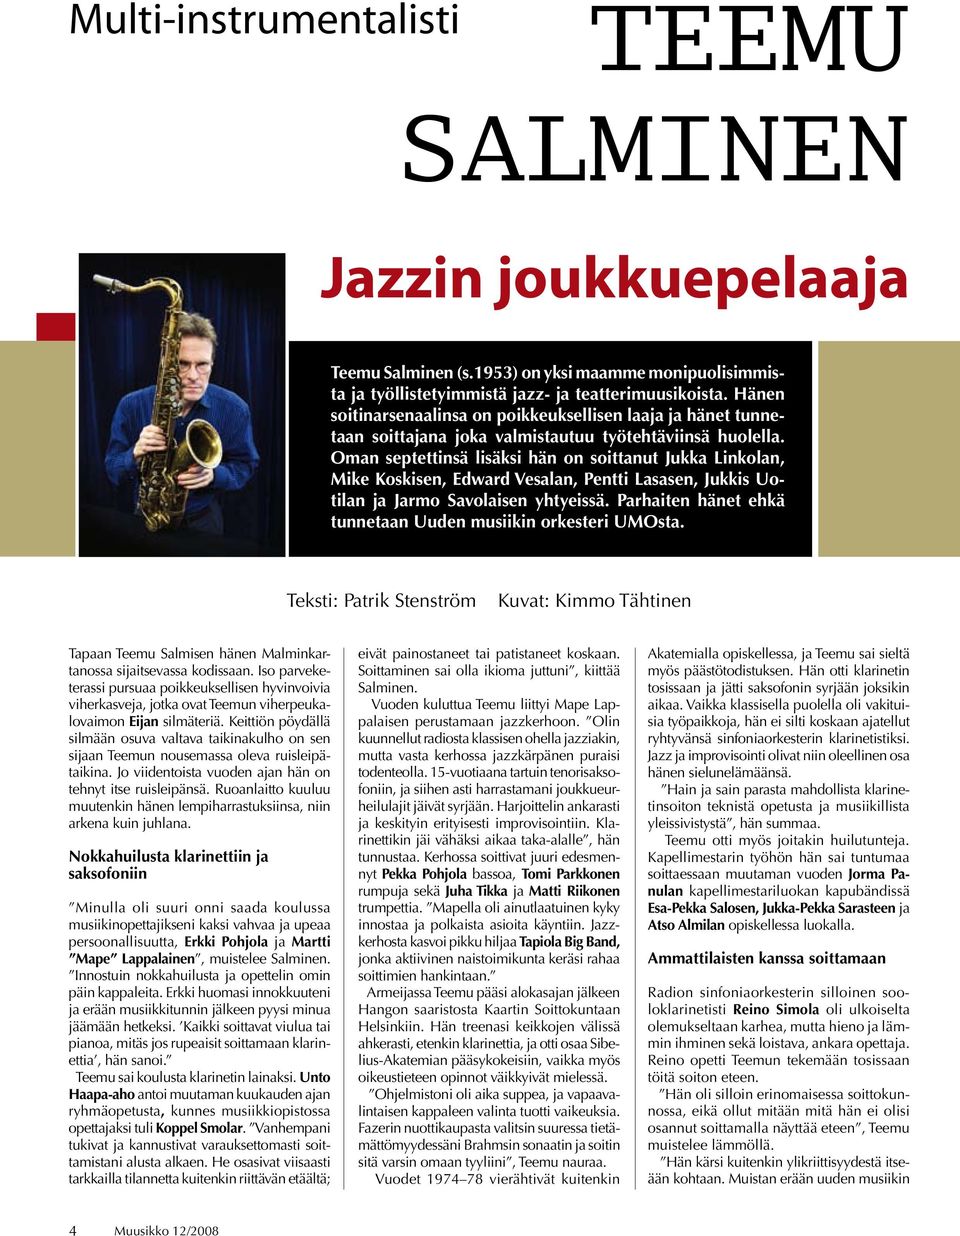 Oman septettinsä lisäksi hän on soittanut Jukka Linkolan, Mike Koskisen, Edward Vesalan, Pentti Lasasen, Jukkis Uotilan ja Jarmo Savolaisen yhtyeissä.